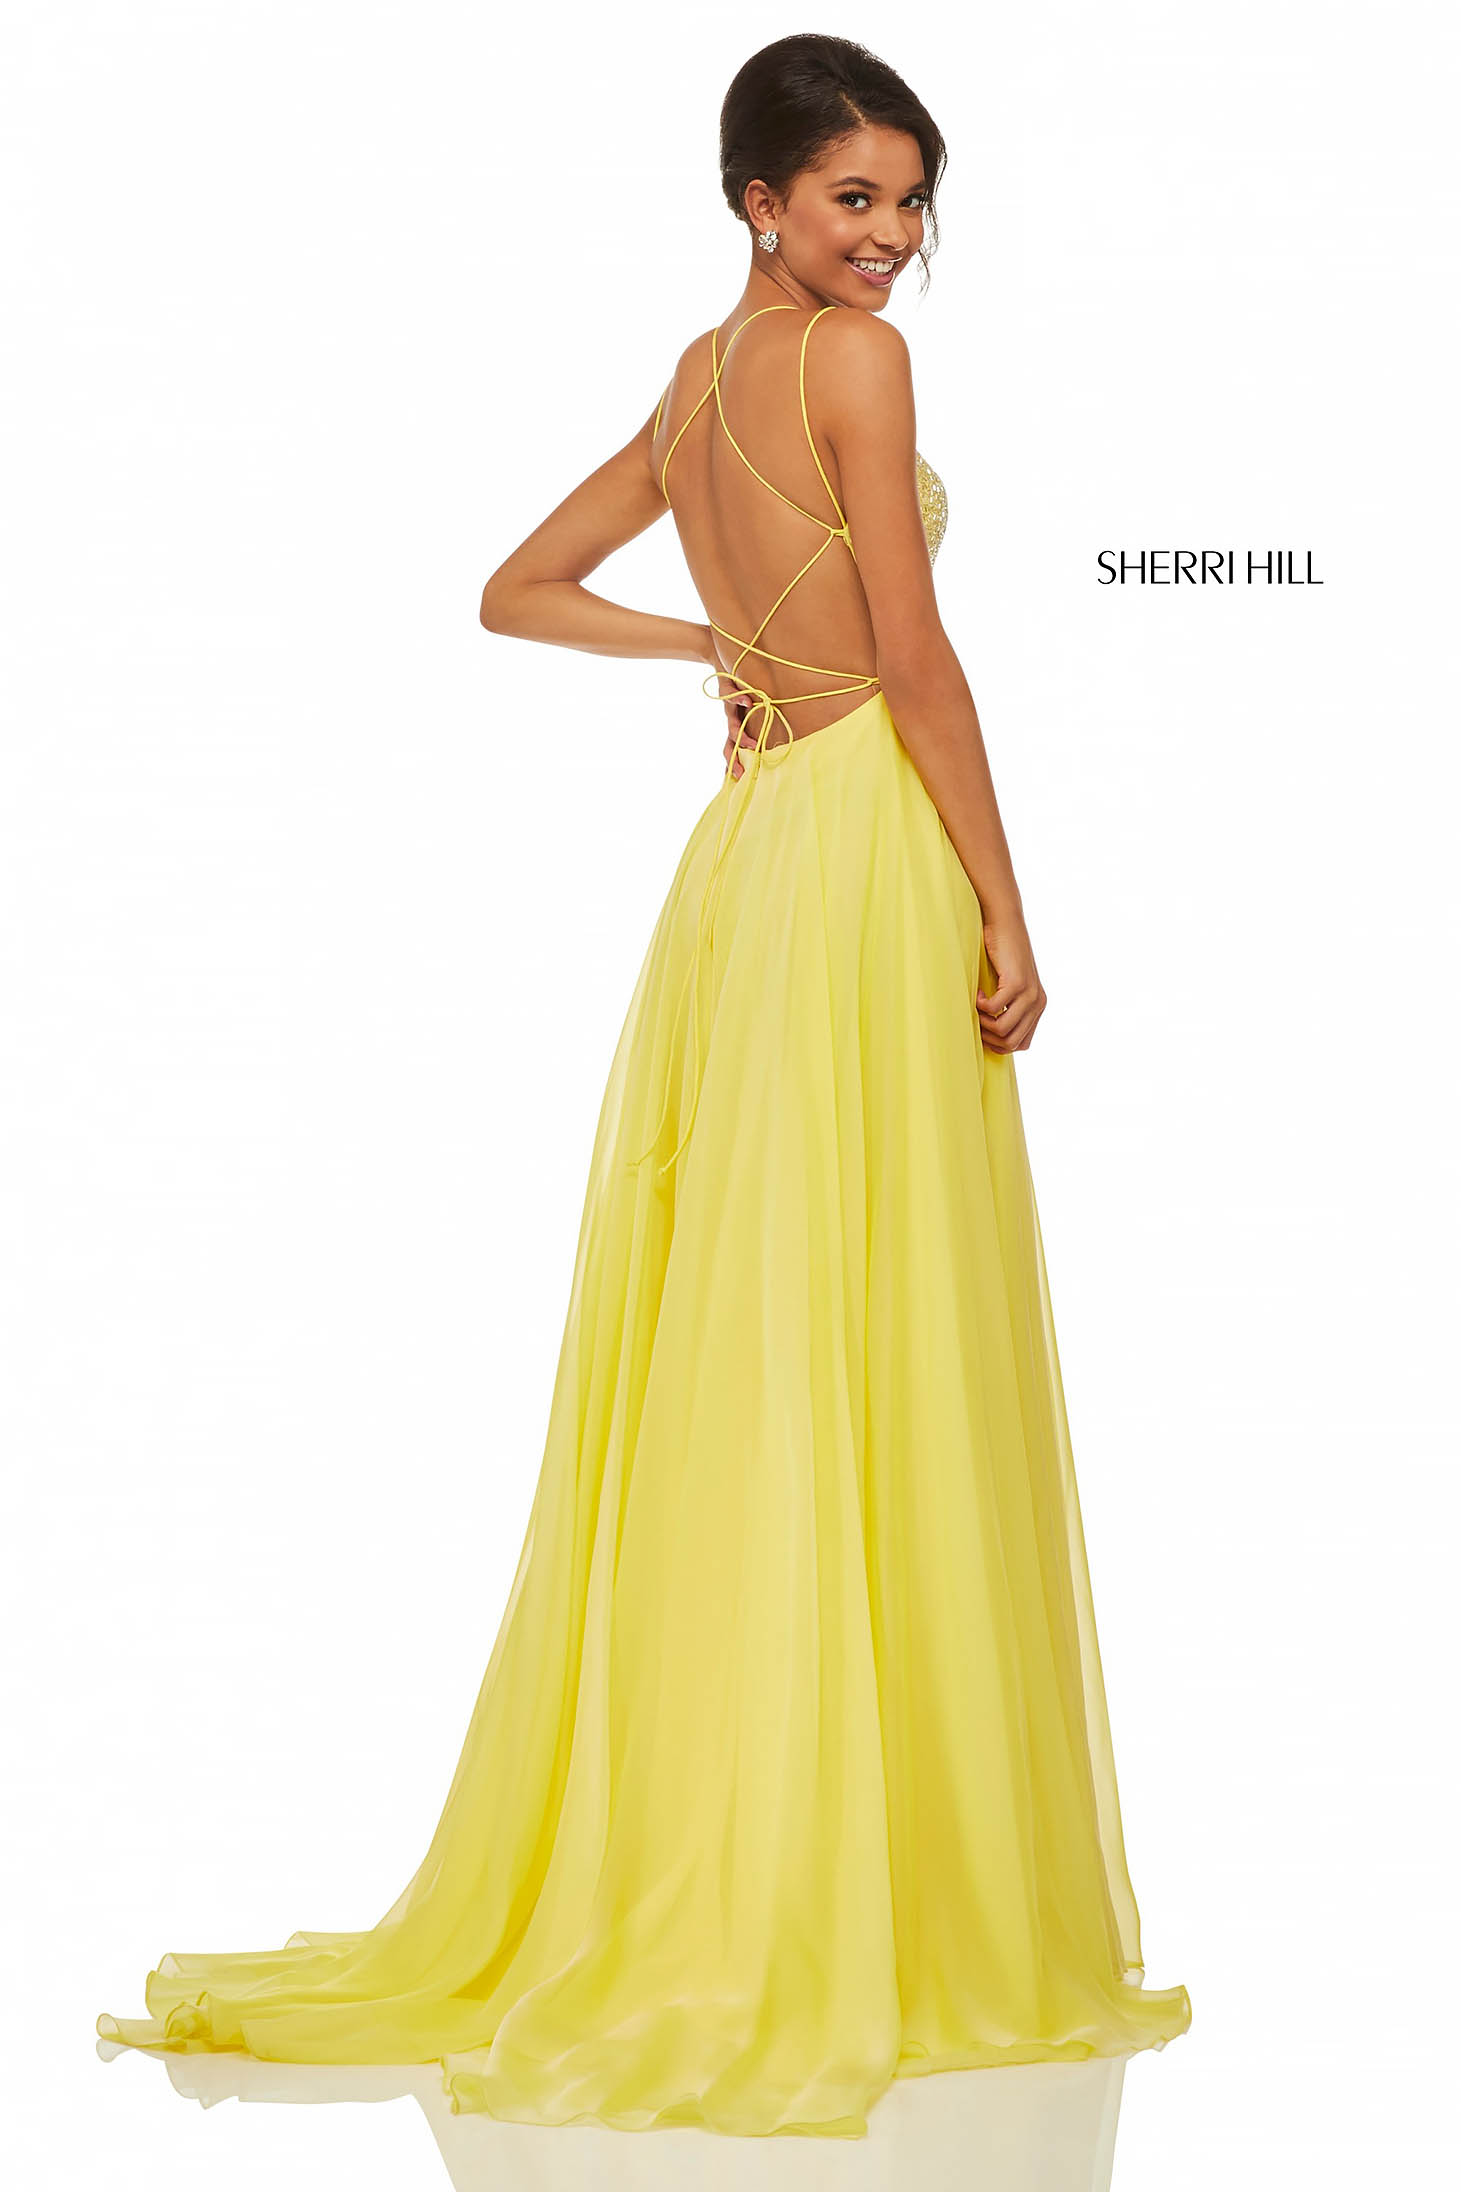 Sherri Hill 52591 Yellow Dress 2 - StarShinerS.com